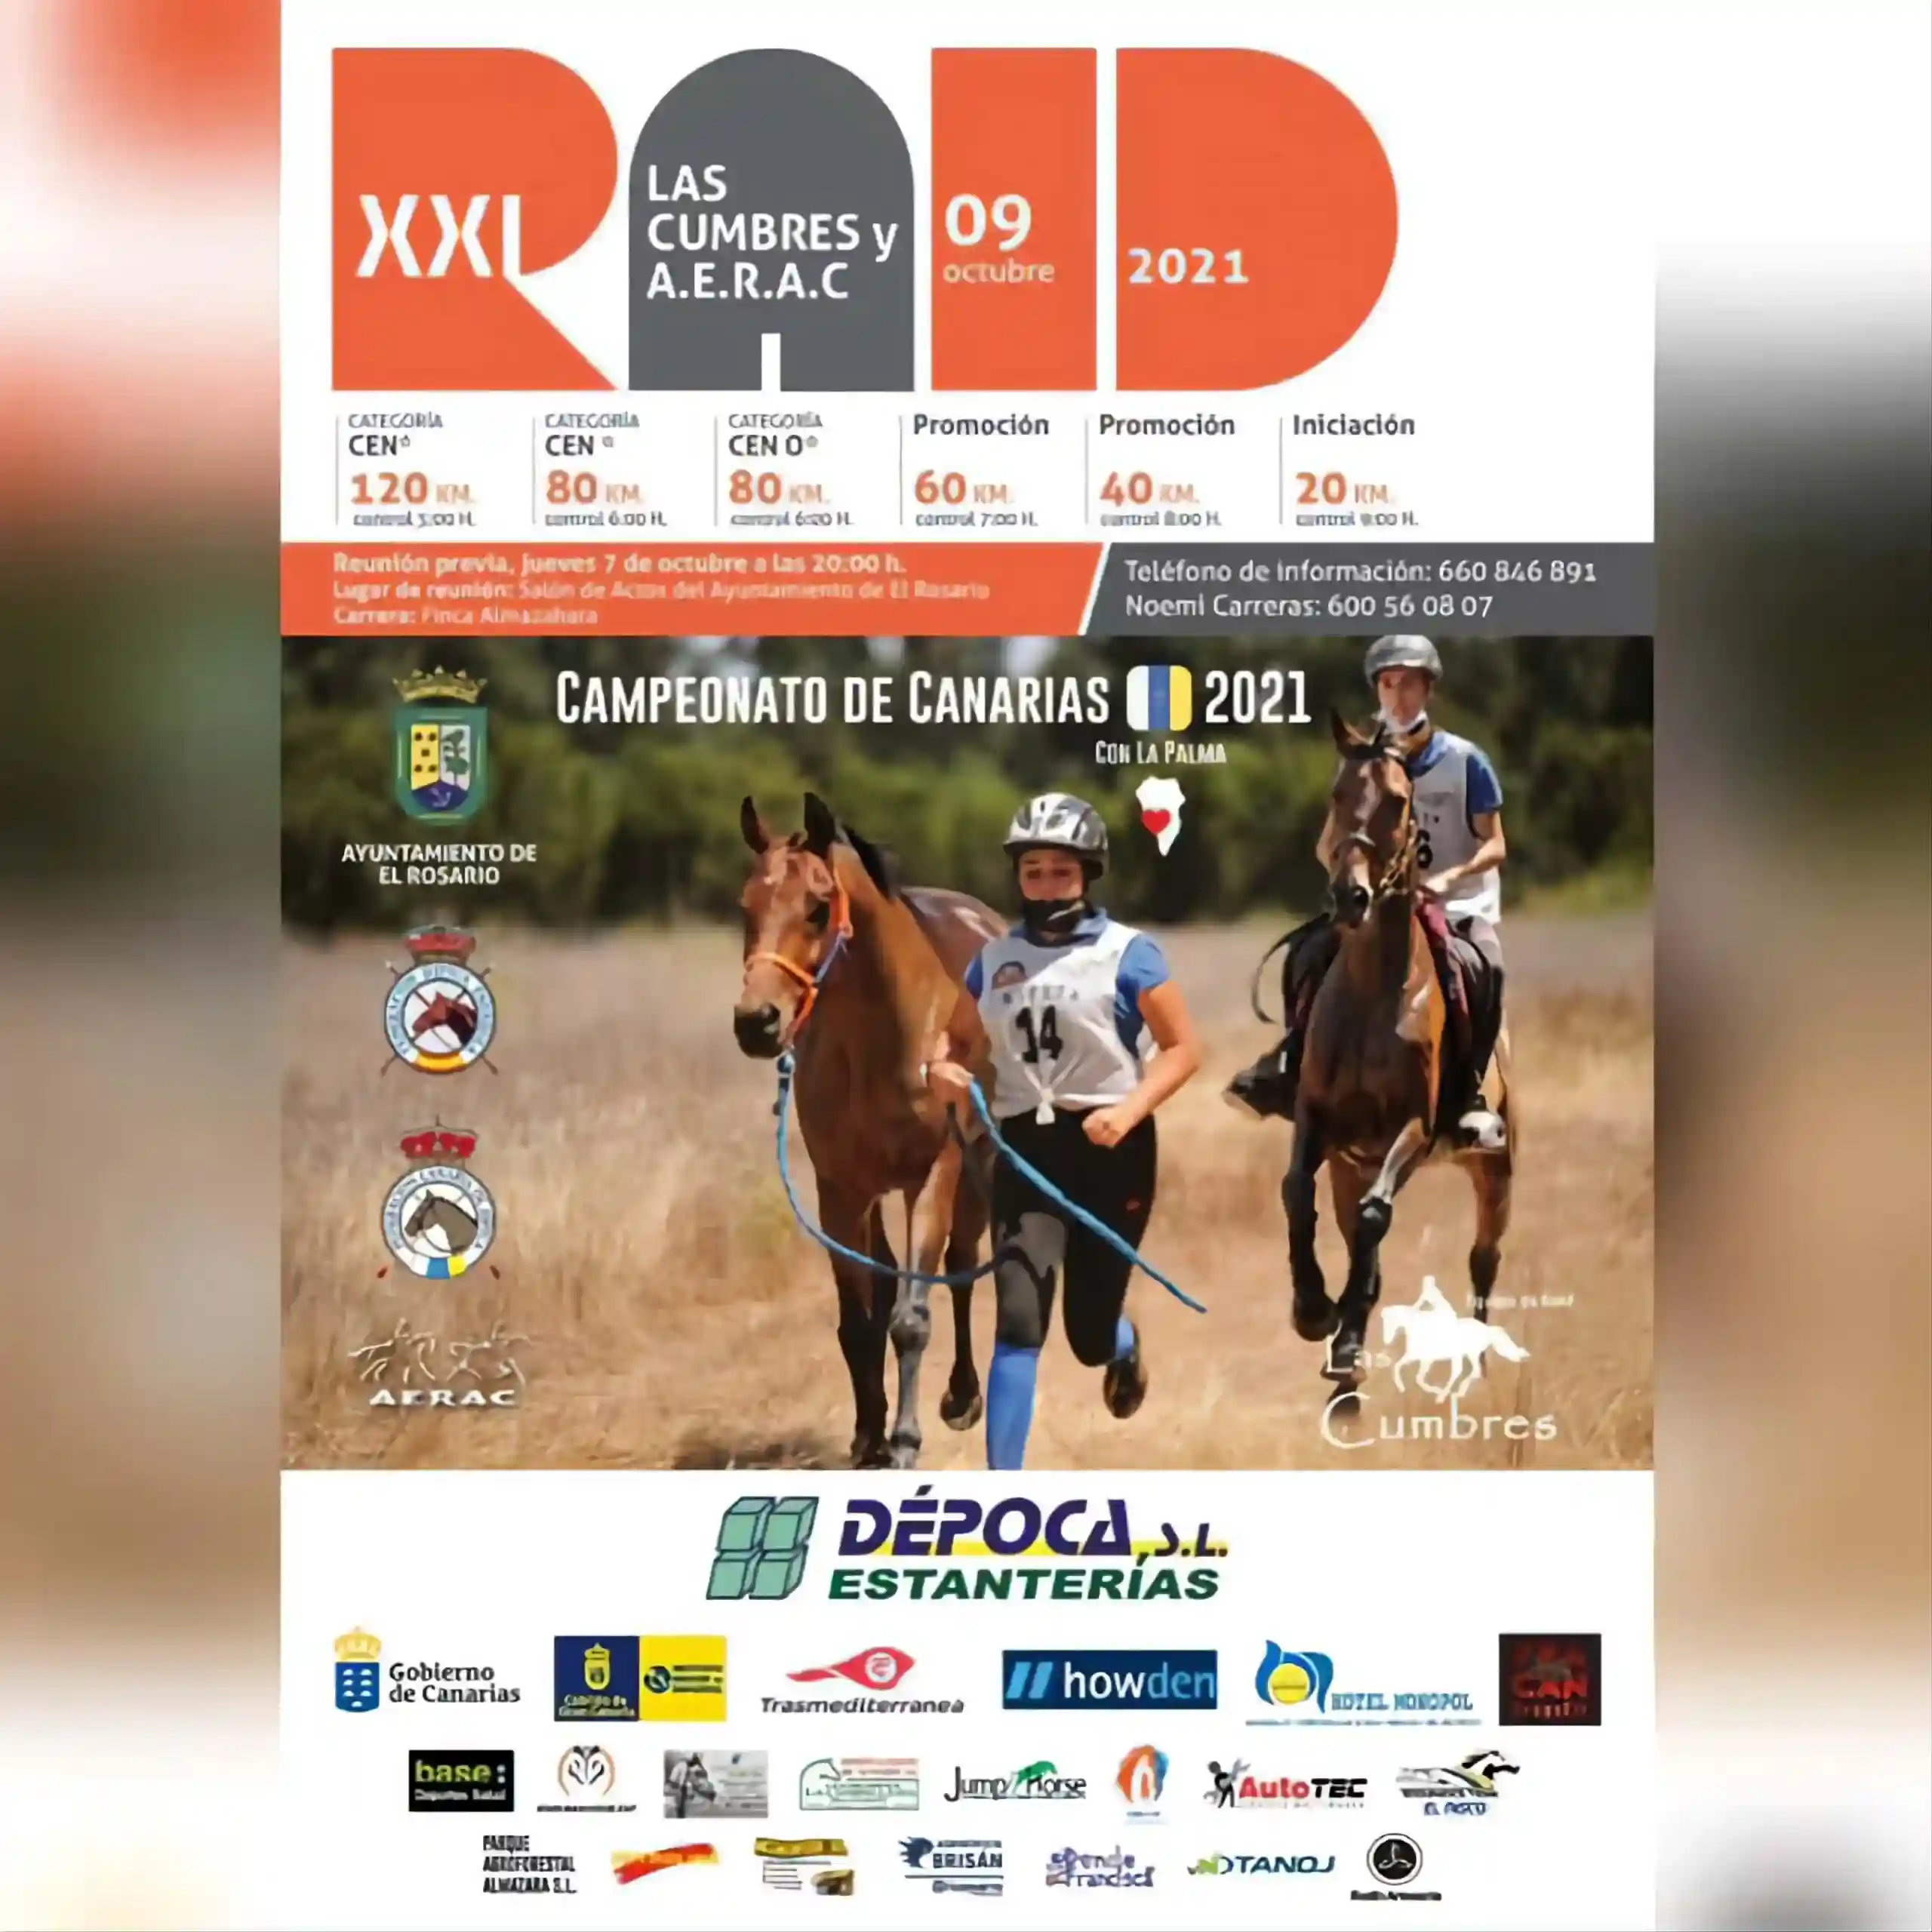 Poster of XXI Raid las Cumbres y AERAC Campeonato de Canarias 2021